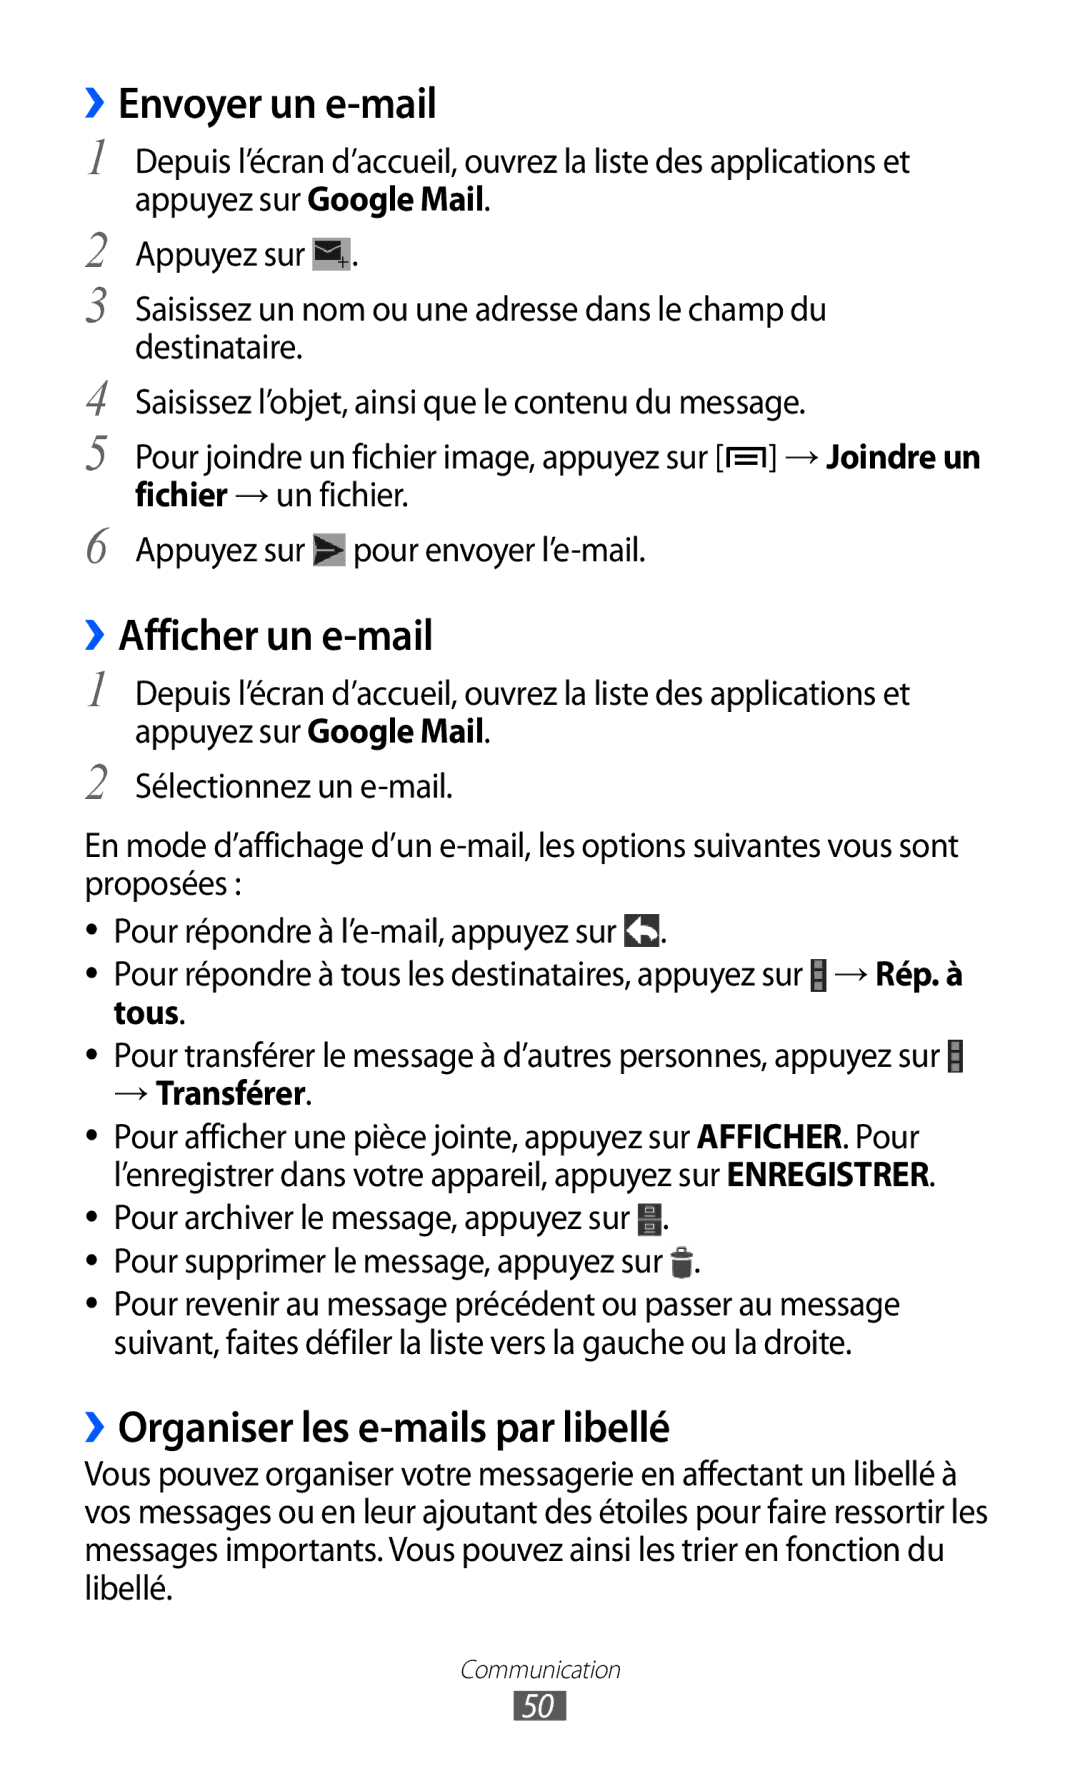 Samsung GT-I9100LKNSFR manual ››Envoyer un e-mail, ››Afficher un e-mail, ››Organiser les e-mails par libellé, → Transférer 